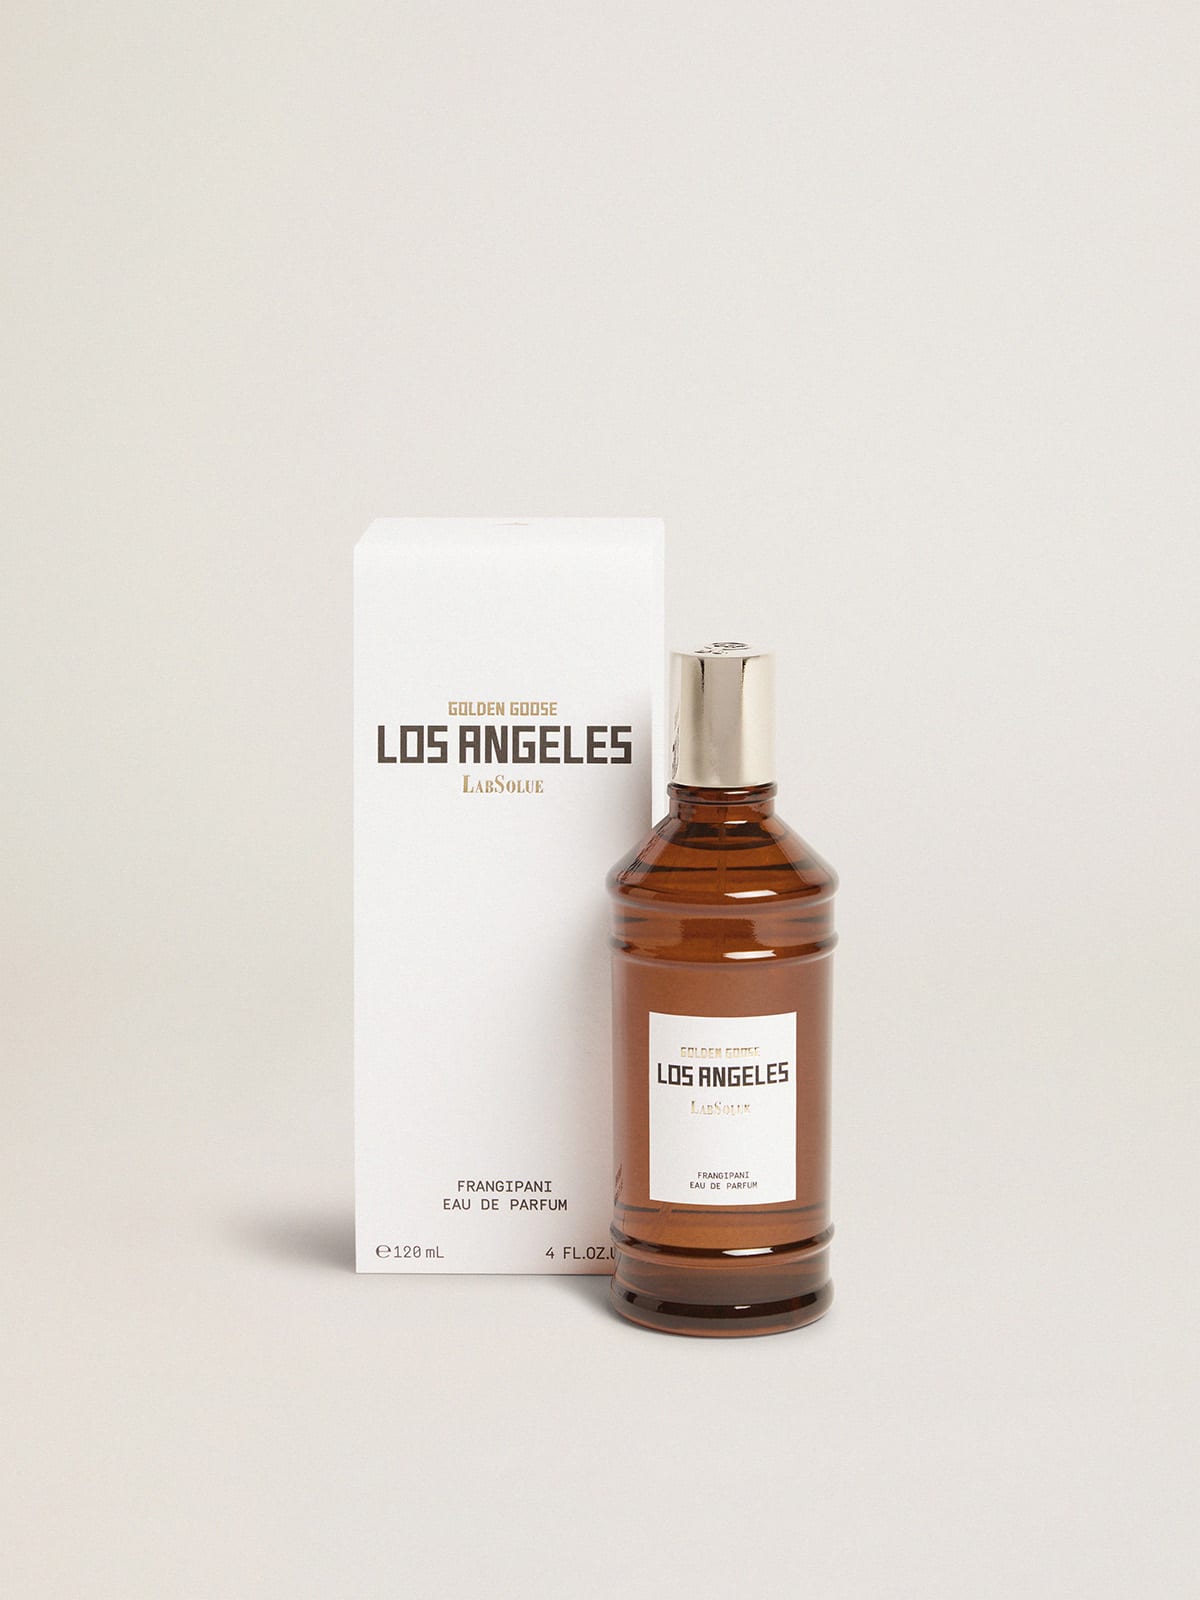 Golden Goose - Los Angeles Essence Frangipane Eau de Parfum 120 ml in 